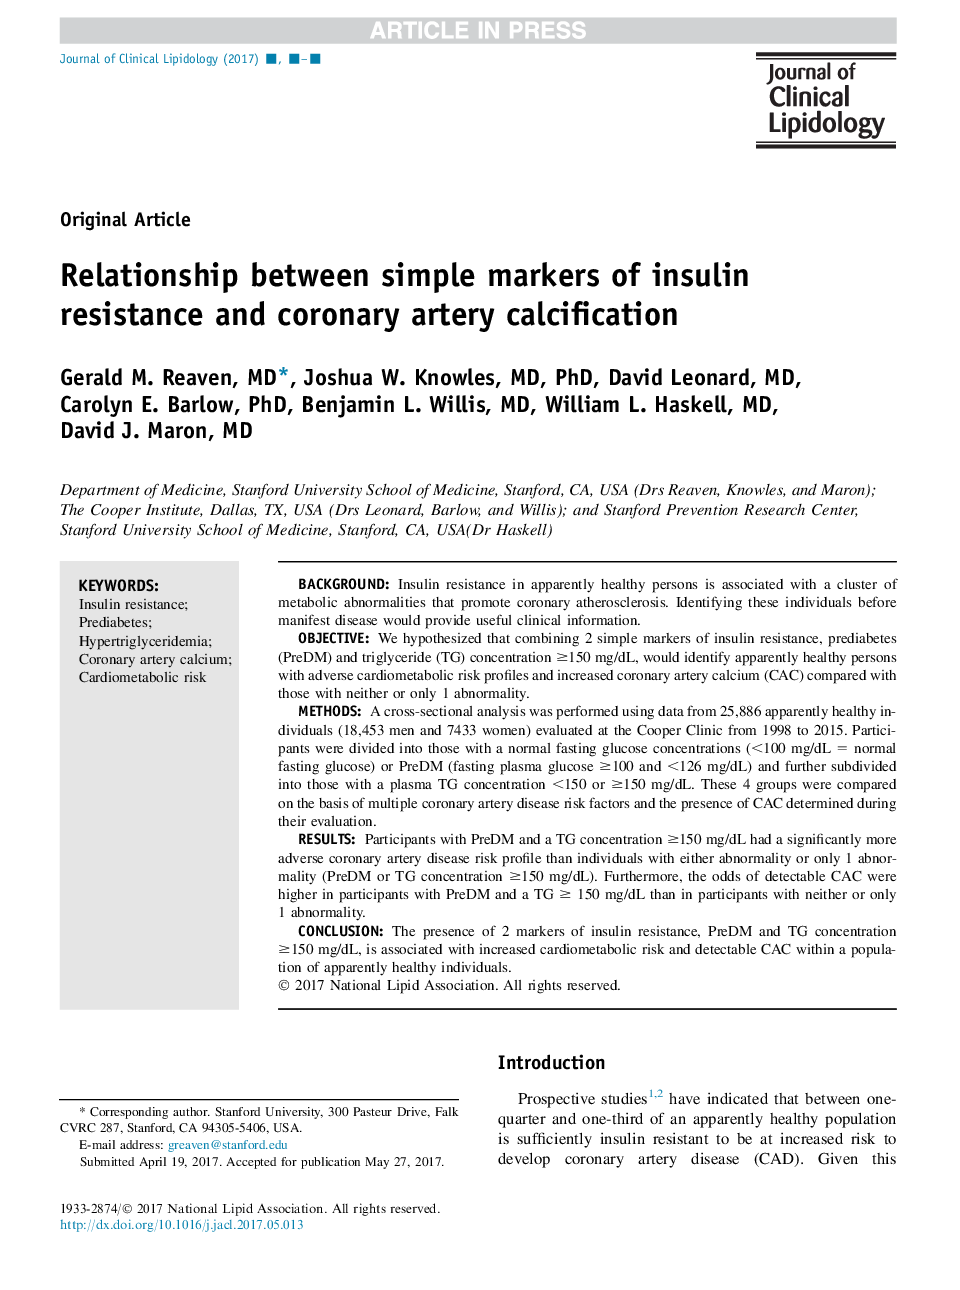 ارتباط بین نشانگرهای ساده مقاومت به انسولین و کلسیفیکاسیون عروق کرونر 